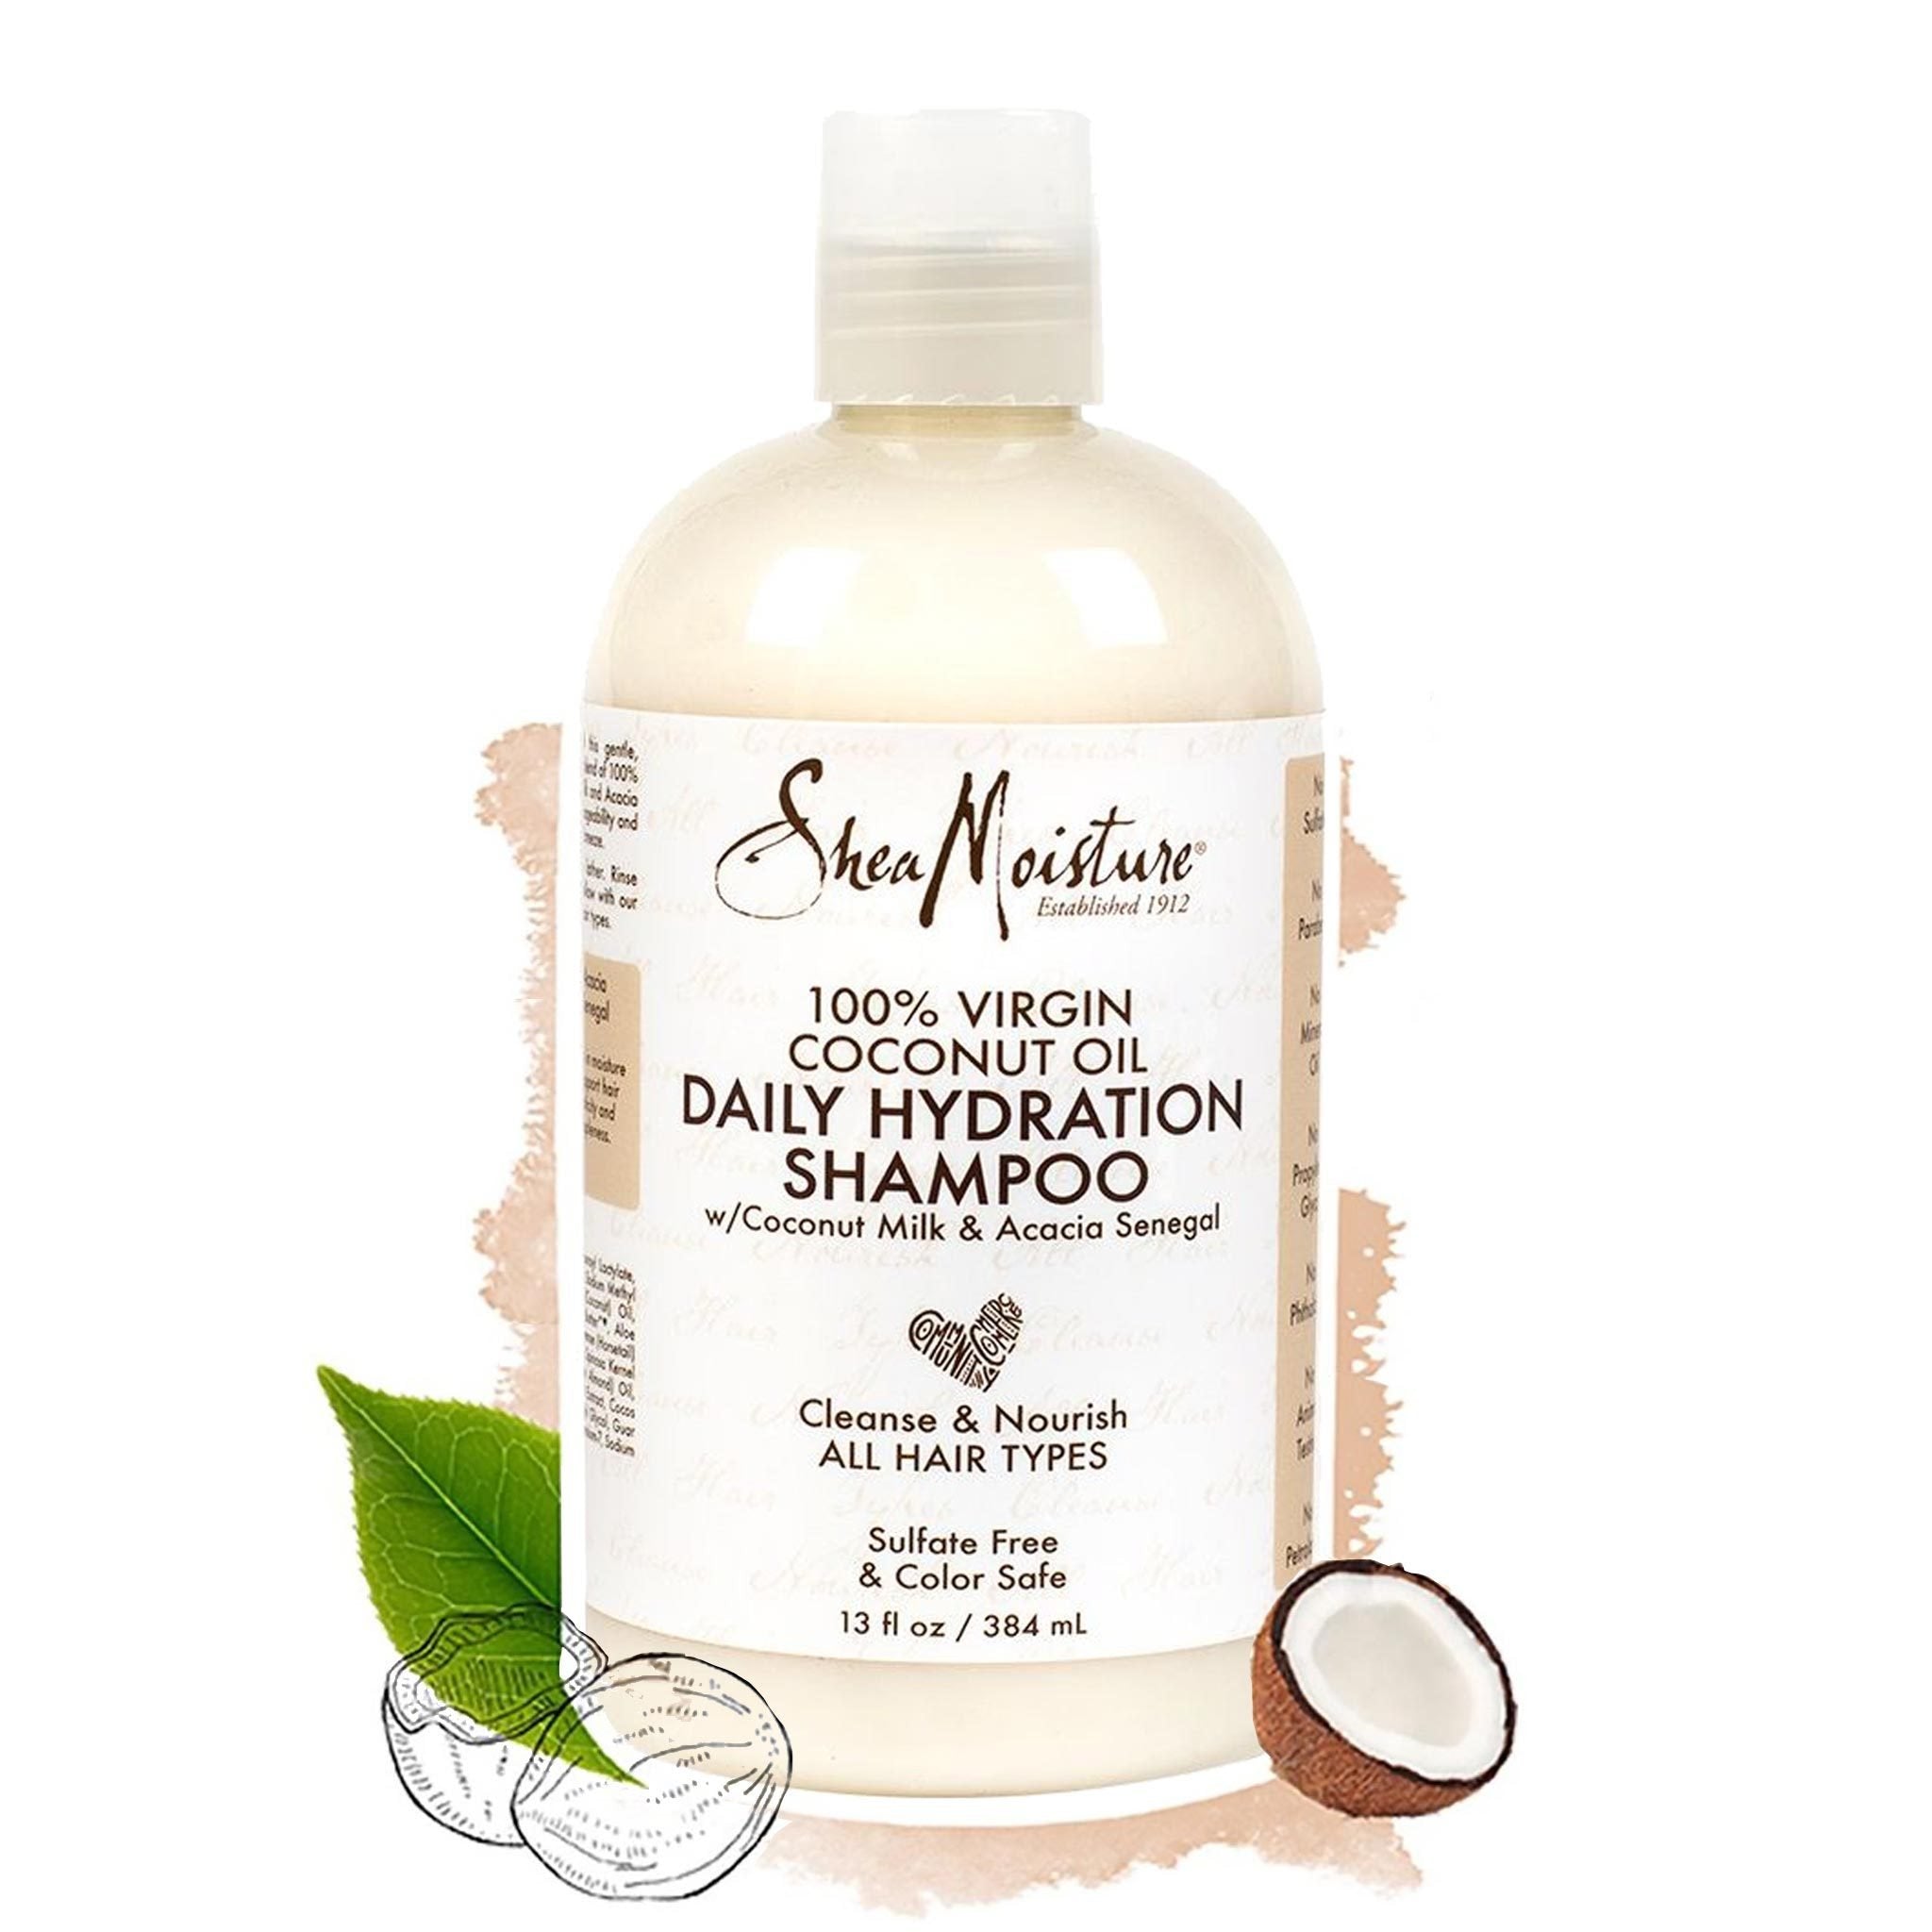 Shea Umidità | Shampoo Idratazione Giornaliera - lockenkopf